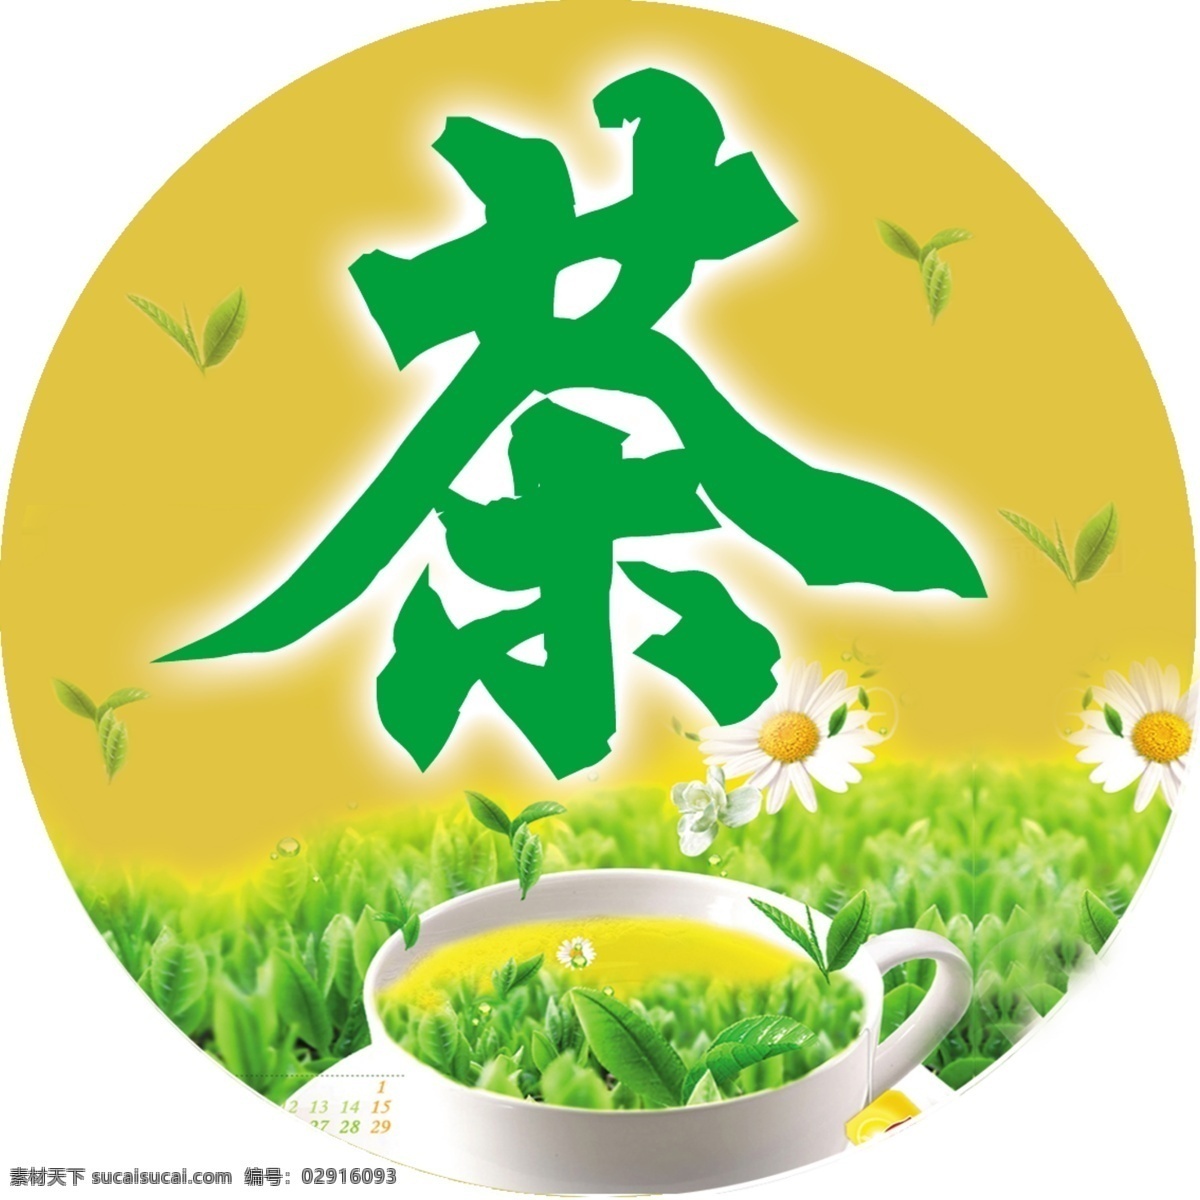 茶叶包装 茶叶 茶叶模板下载 psd素材 源文件库 生活百科 餐饮美食 黄色